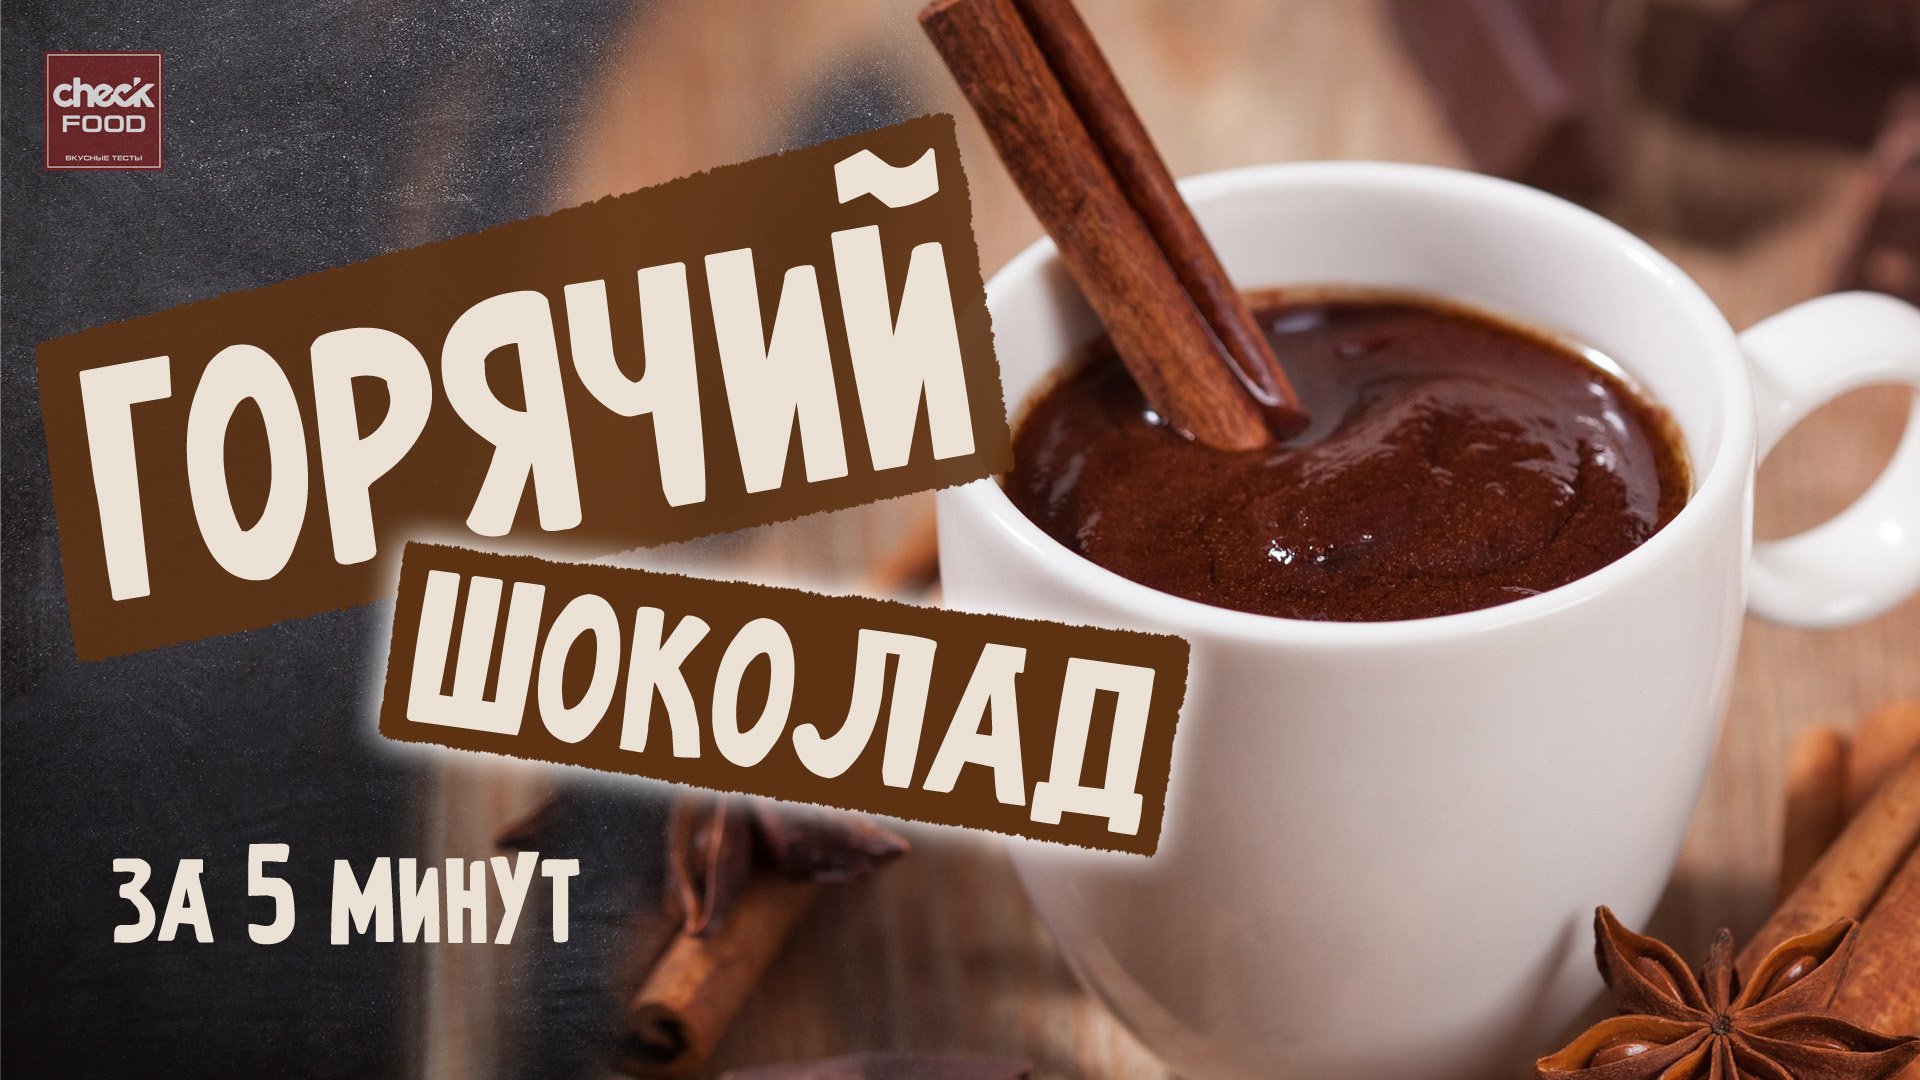 Горячий шоколад без шоколада. Горячий шоколад реклама. Какао и горячий шоколад реклама. Горячий шоколад надпись. Реклама горячего шоколада.